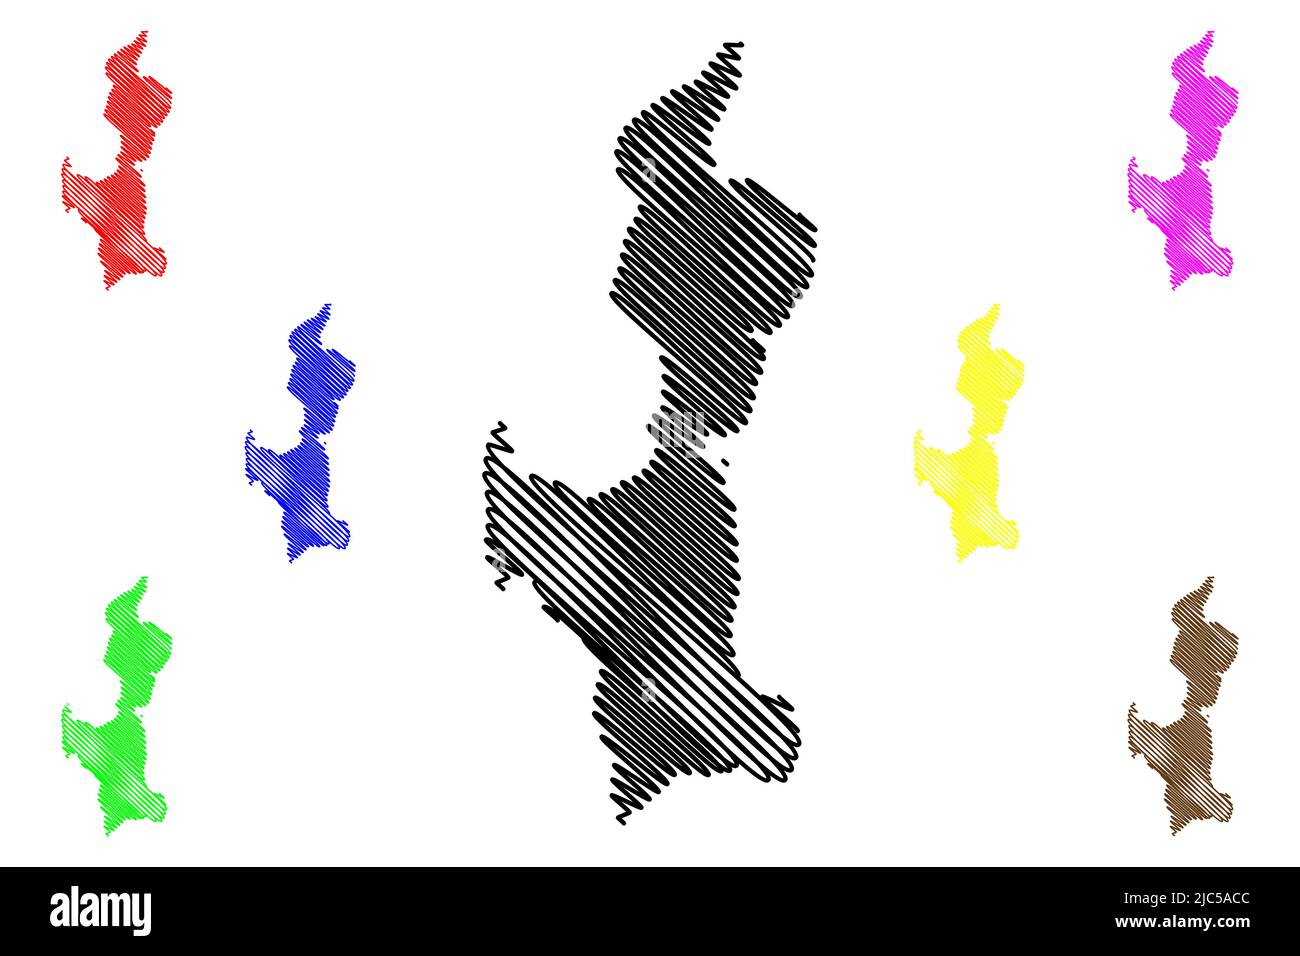 Île d'eDay (Royaume-Uni de Grande-Bretagne et d'Irlande du Nord, Écosse, archipel d'Orkney) carte illustration vectorielle, croquis griffés de l'île d'aide Illustration de Vecteur